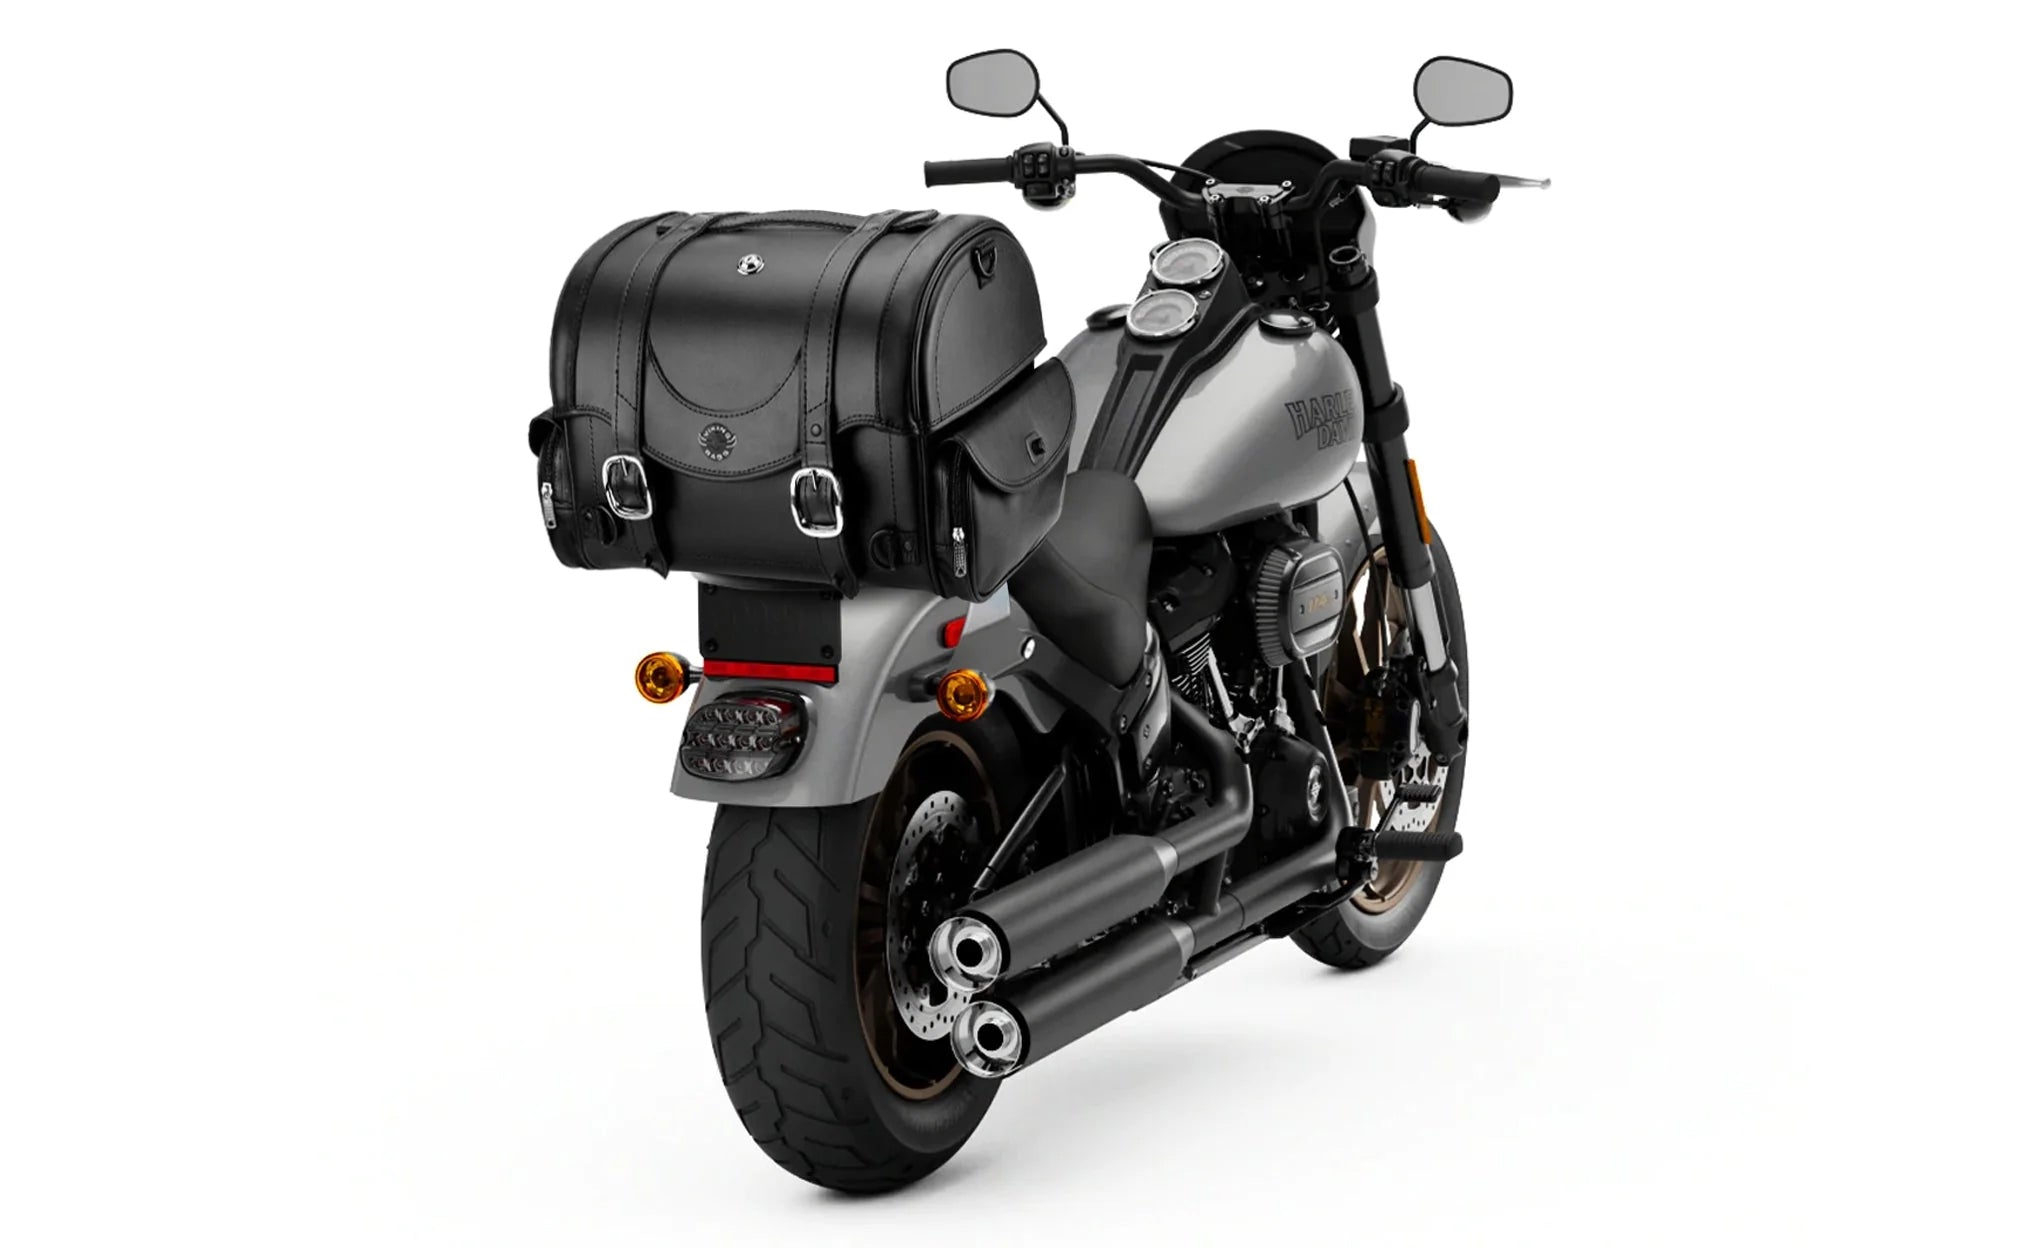 21L - Century Medium Honda Leather Motorcycle Sissy Bar Bag on Bike Photo @expand